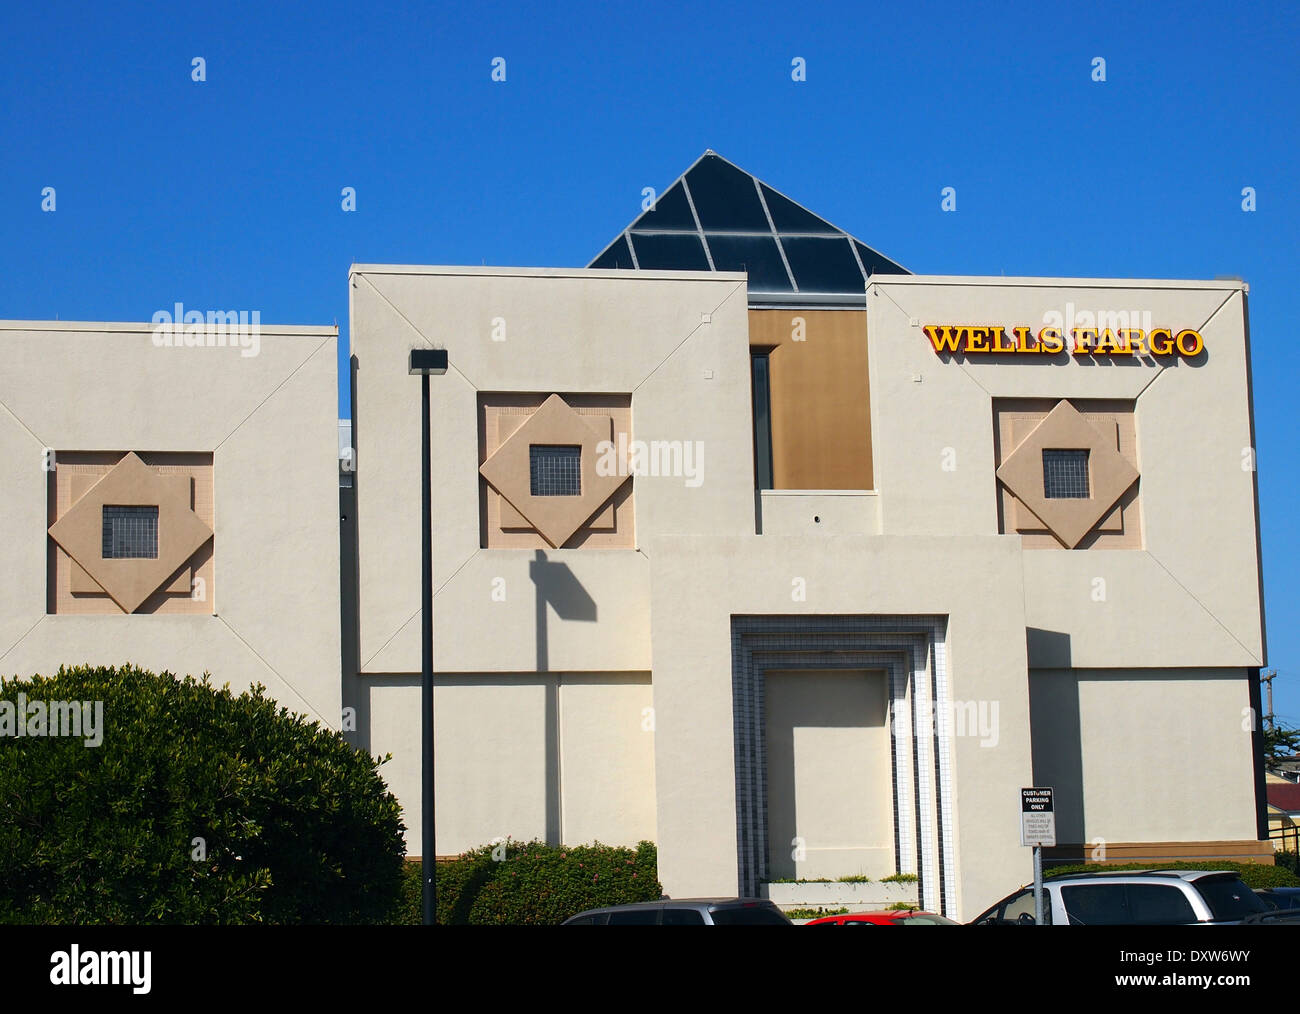 Wells Fargo Bank branch in San Francisco, California, USA, Stock Photo